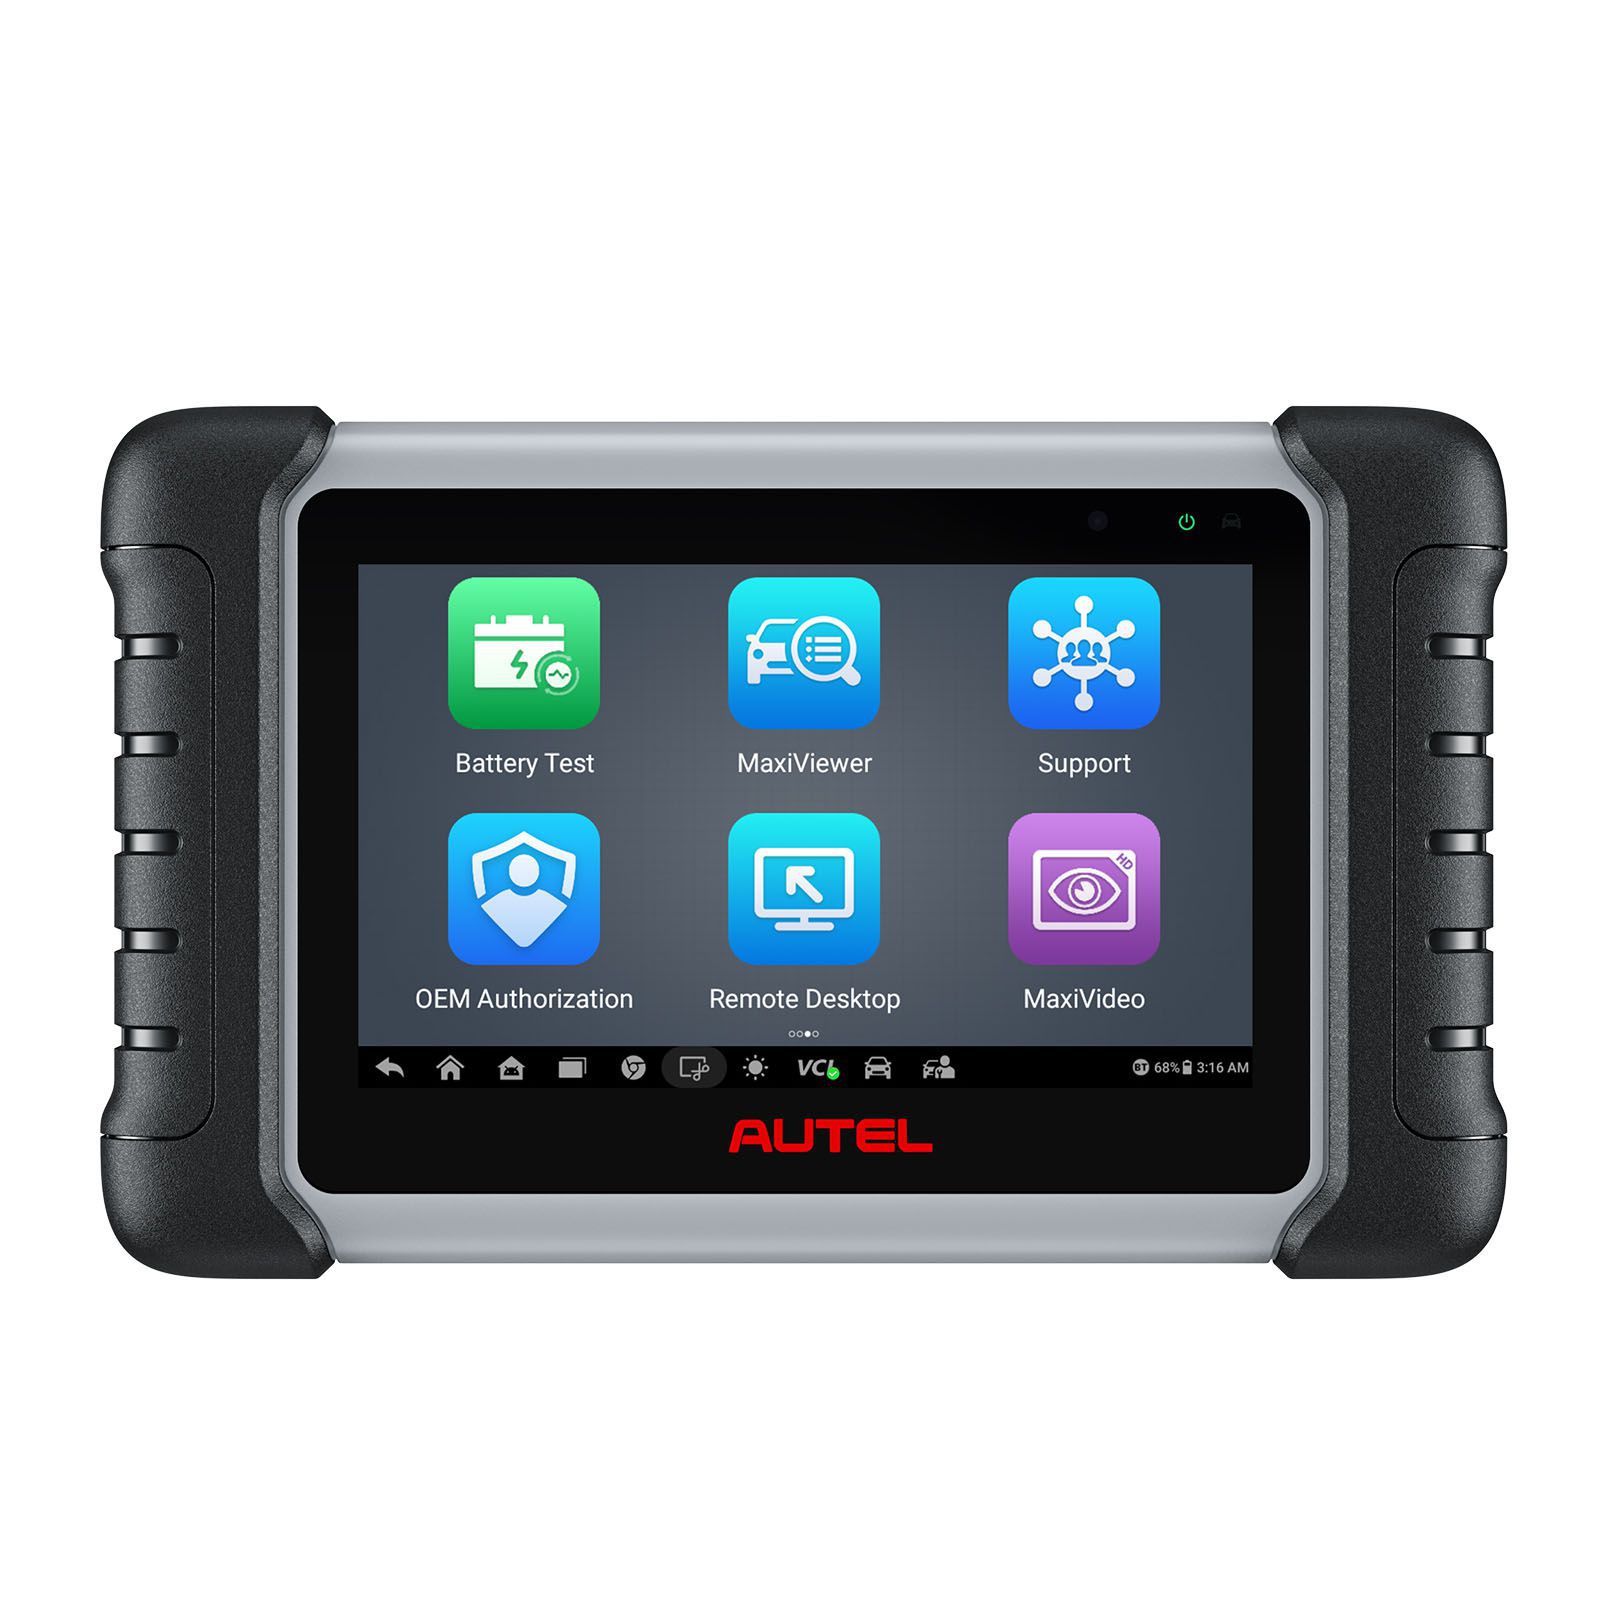 Autel MaxiCOM MK808BT PRO ferramenta de diagnóstico de carro, testes ativos e scanner de controle bidirecional, 28+ serviços, FCA AutoAuth, diagnóstico sem fio